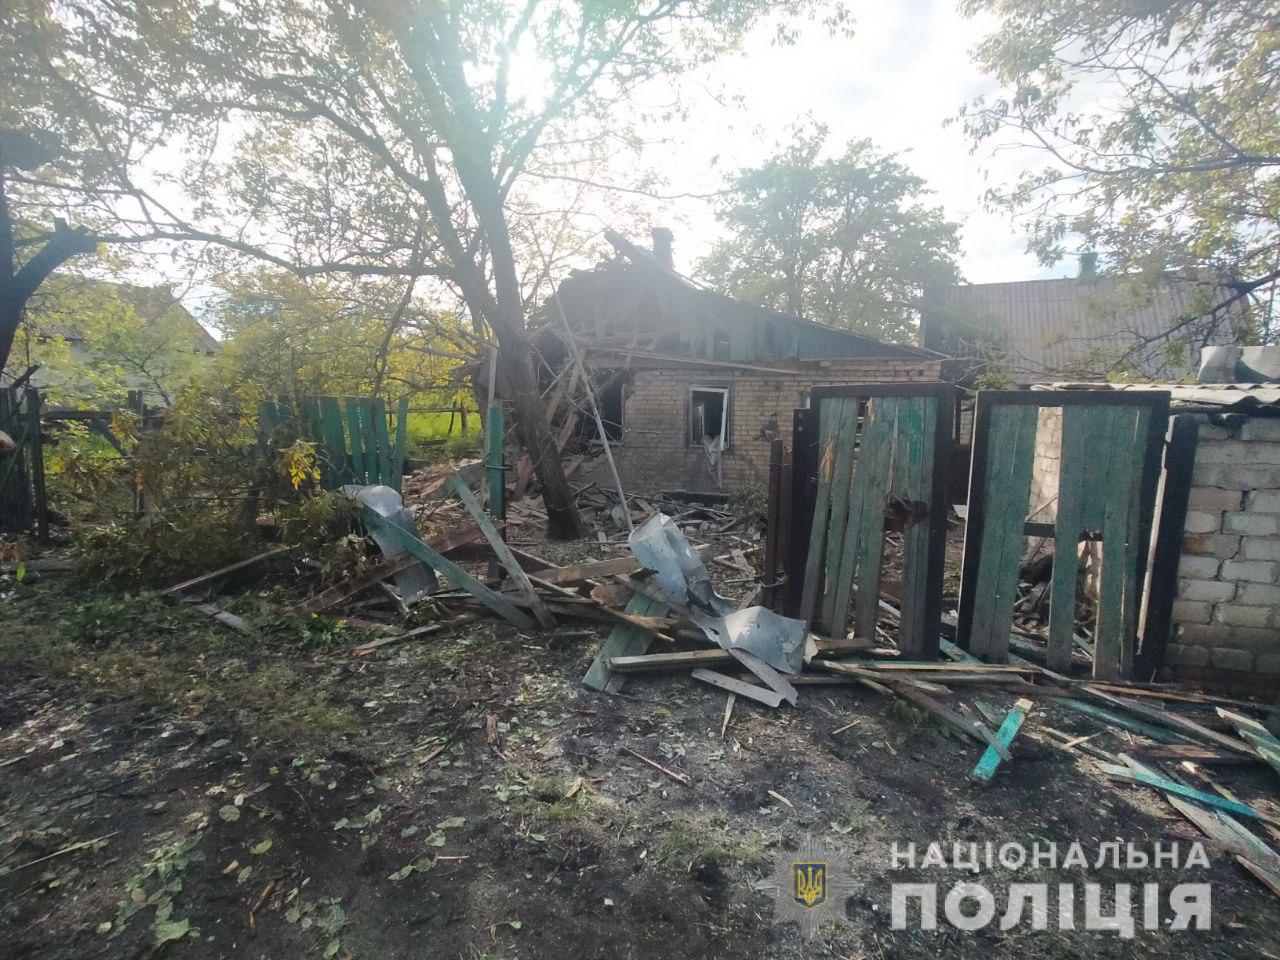 Трое мирных жителей Донецкой области погибли 14 мая. Под прицелом оказались 11 населенных пунктов, — полиция (ФОТО) 8